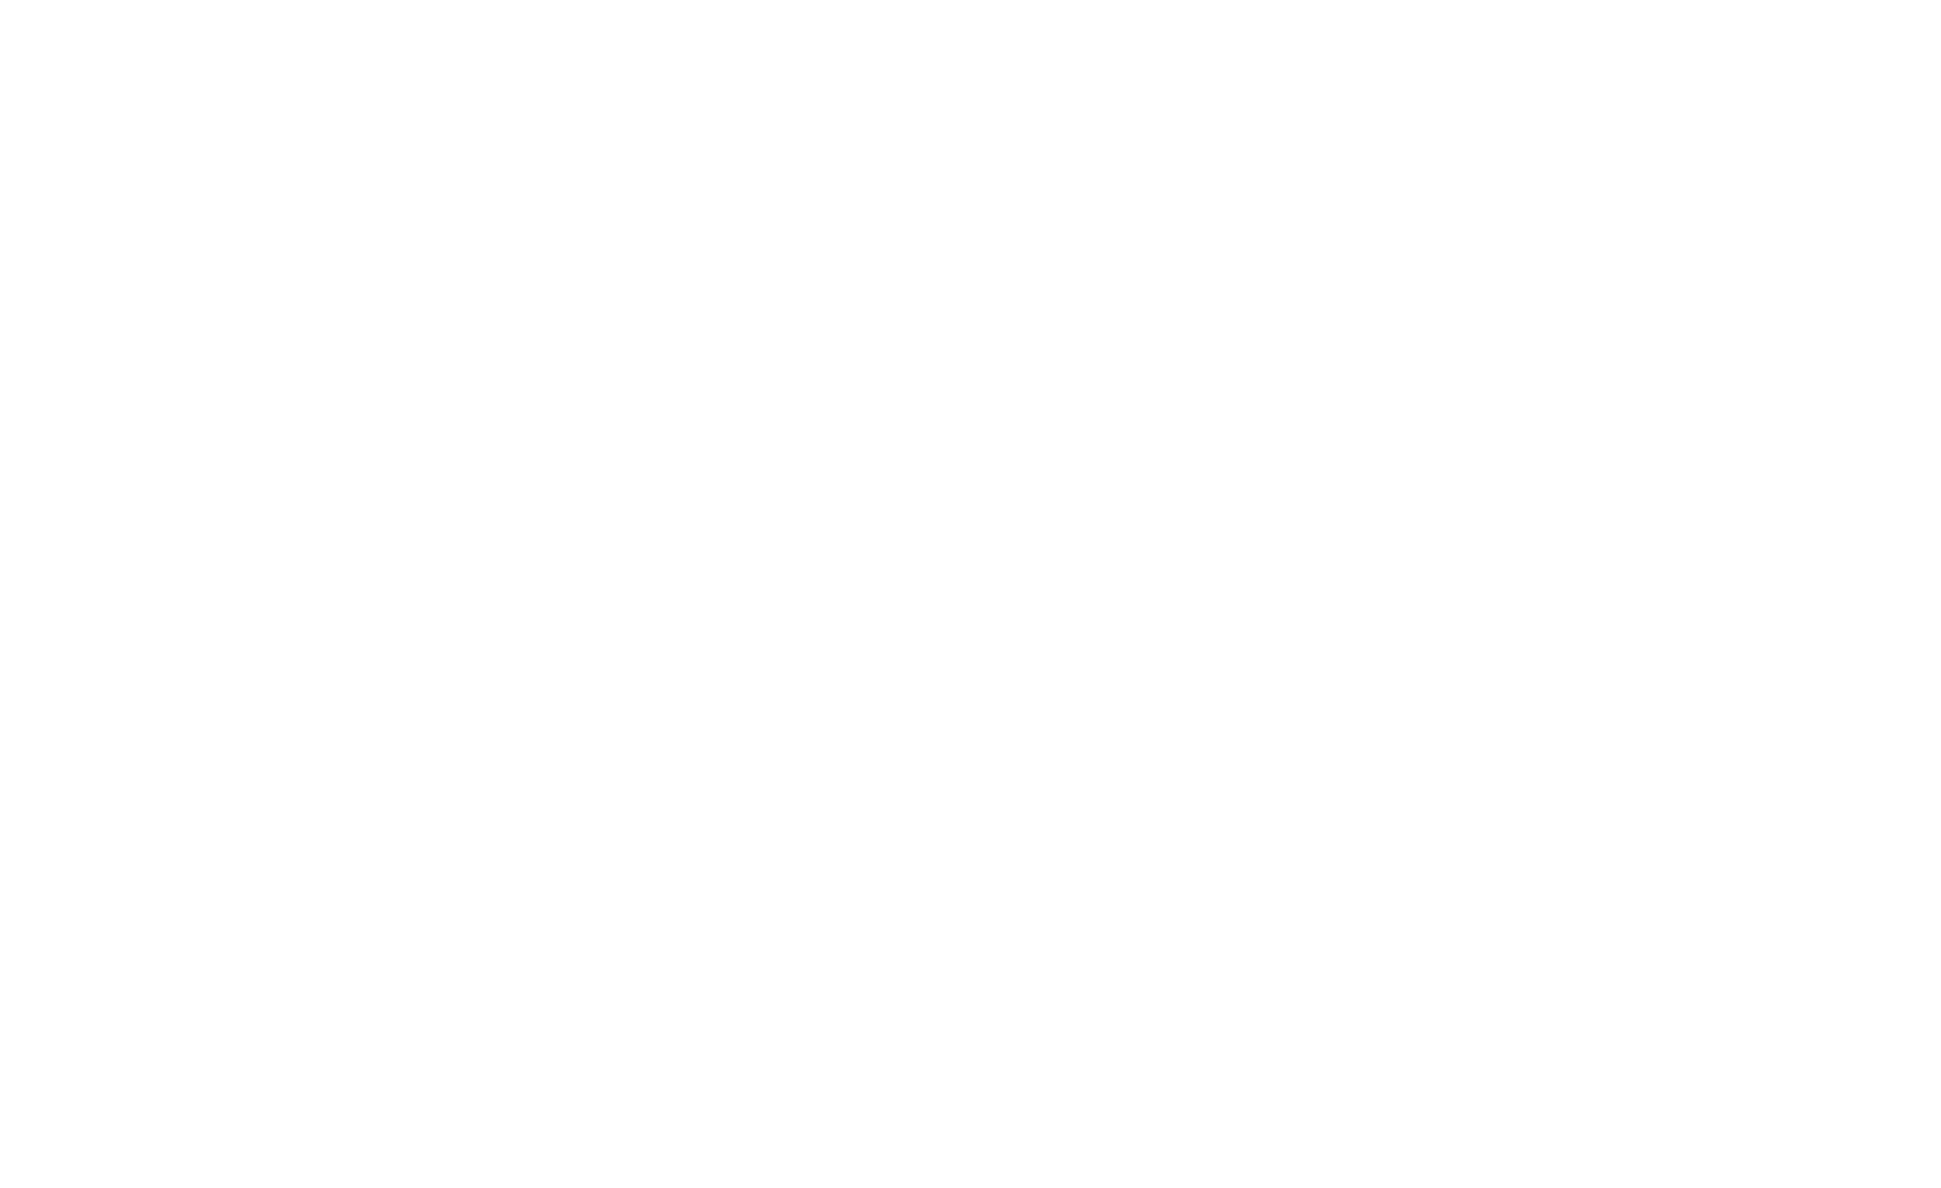 Steve Sauvé